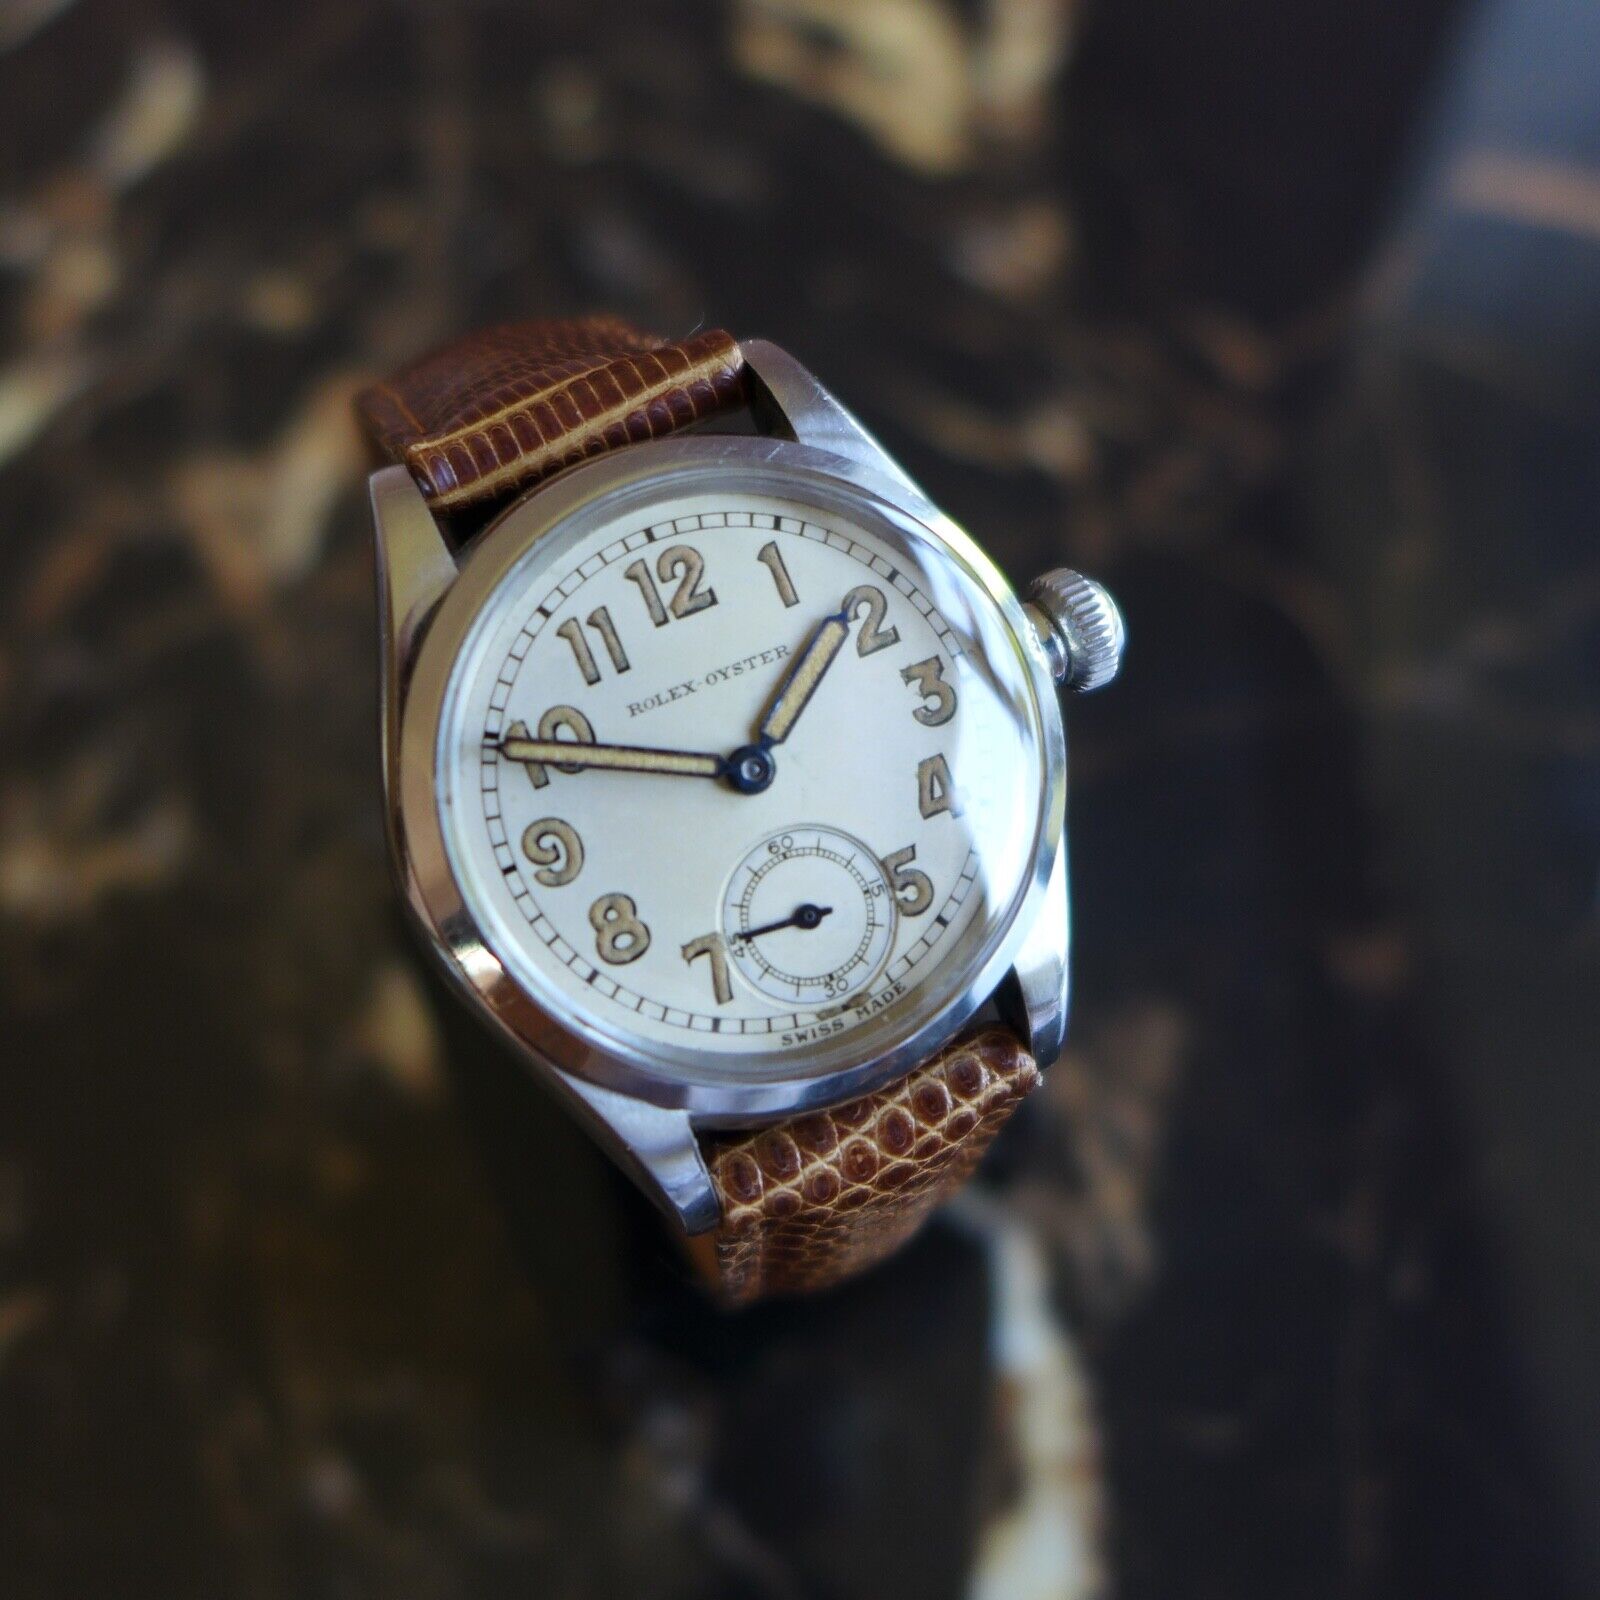 ROLEX オイスター エレガント CHAS.GREIG&SON  Ref.3121 アンティーク品 メンズ 腕時計